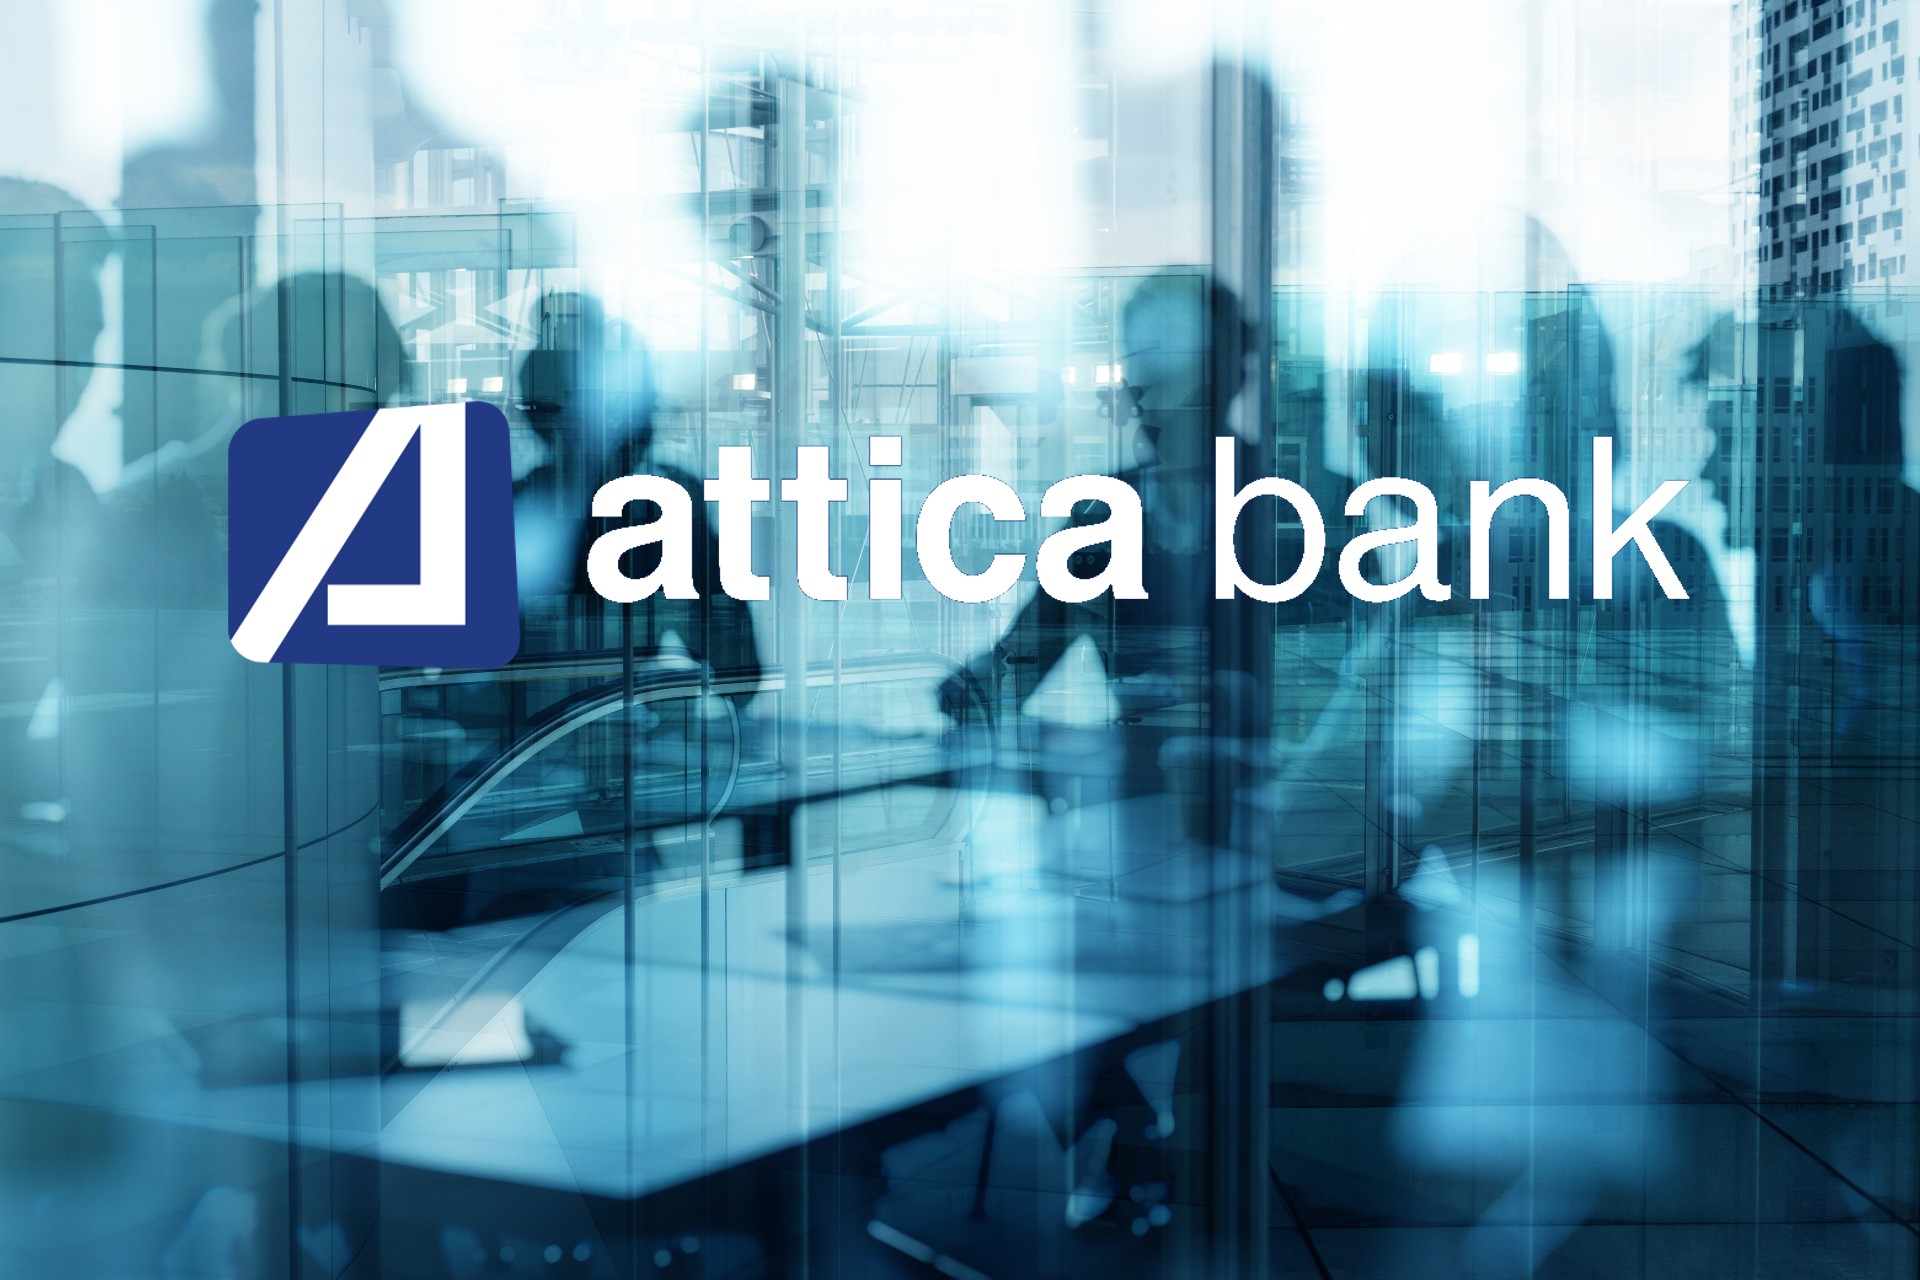 Με νέο business plan για την πώληση των δανείων, θα συζητηθεί εντός της εβδομάδας το ενημερωτικό της Attica bank